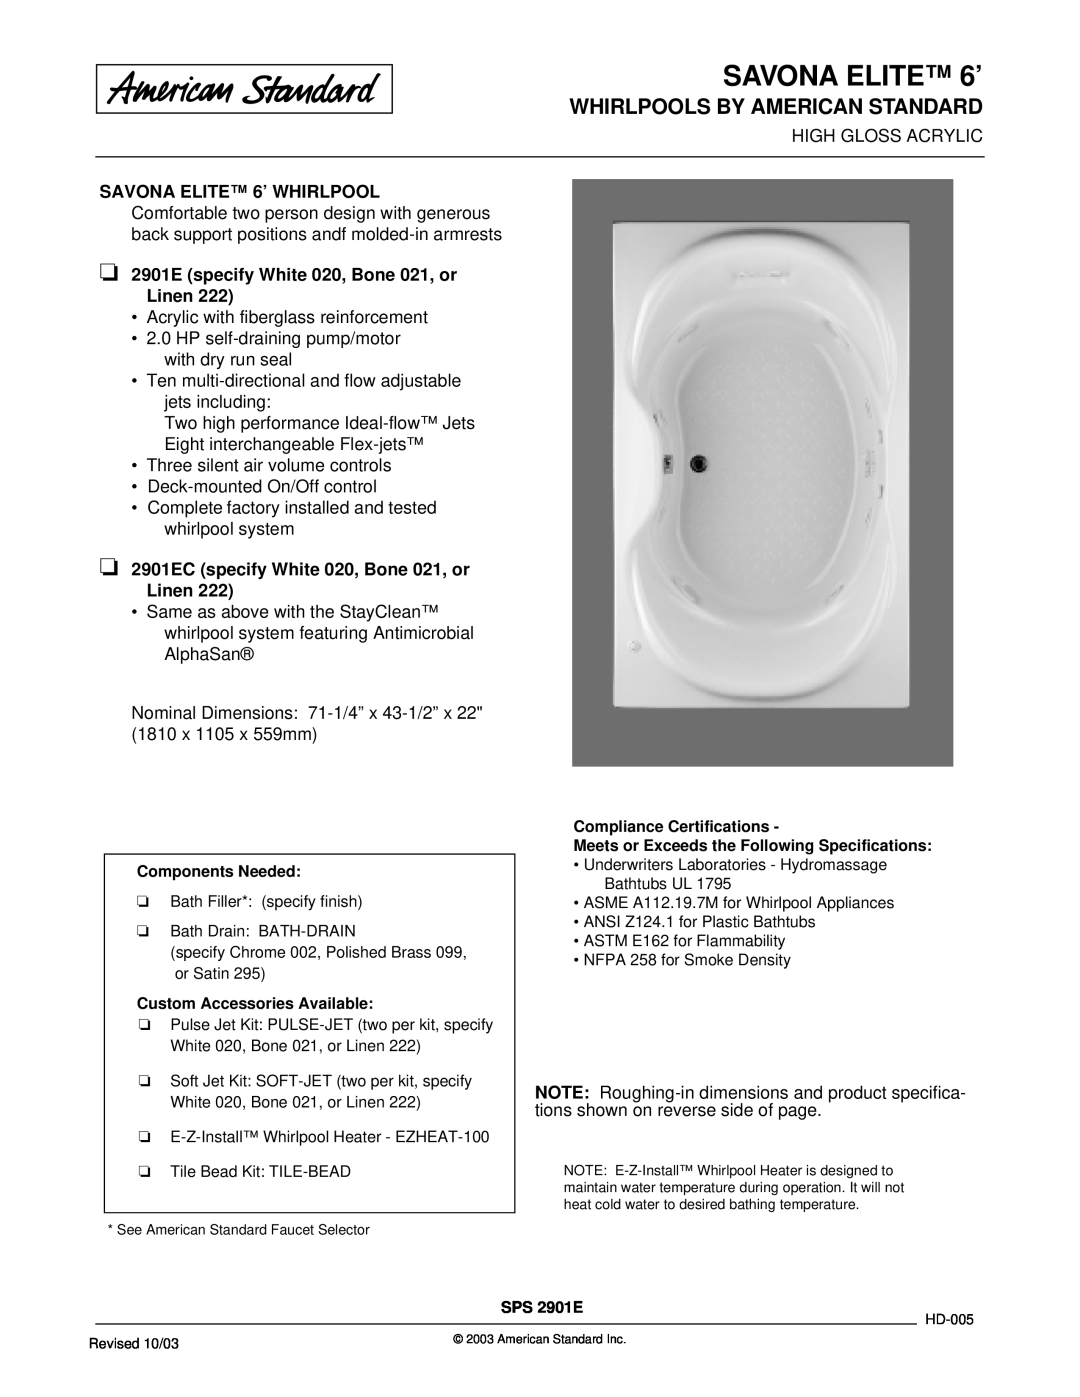 American Standard 2901EC dimensions SAVONA ELITE 6’, Whirlpools By American Standard 